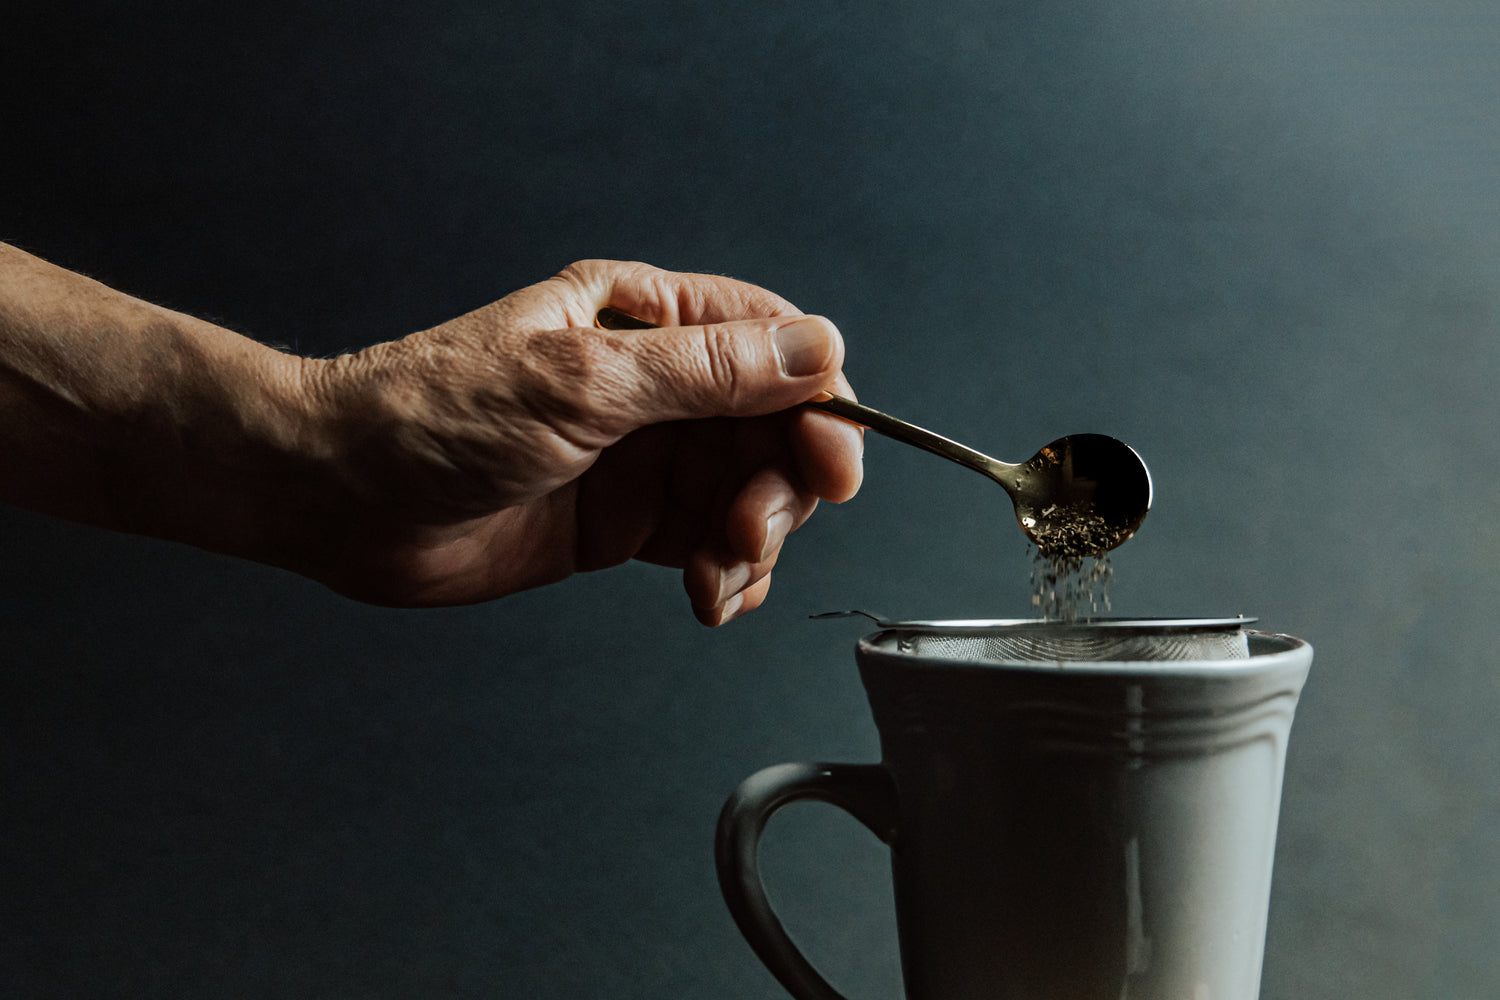 Eine Person füllt mit einem Teelöffel den Grüntee  in ein Teesieb aus Metall, welches sich in einer grünen Tasse befindet